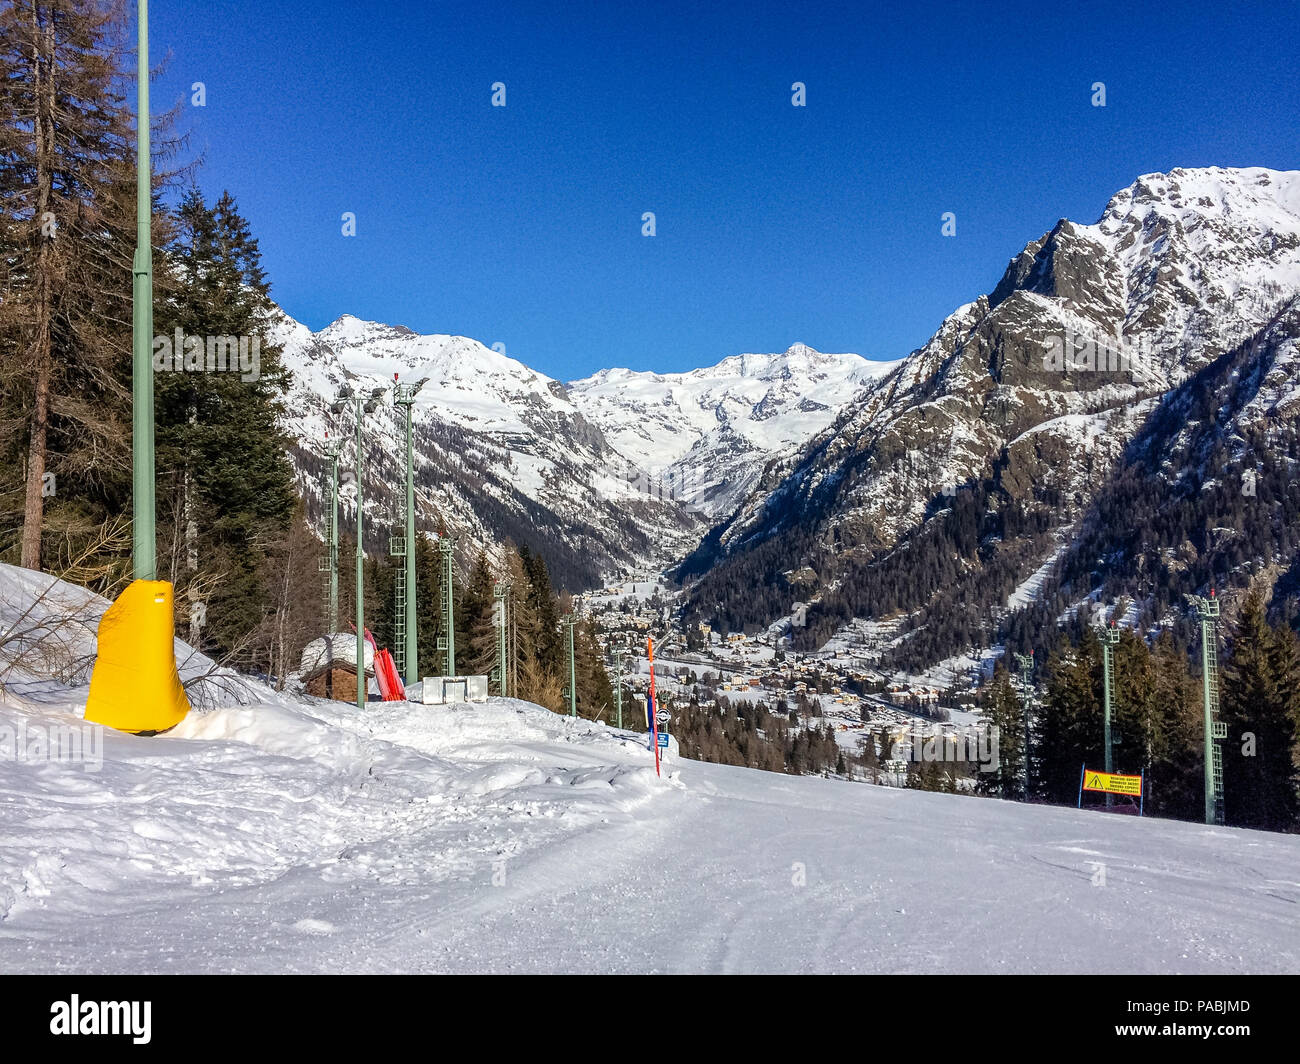 Pistas de esquí en el valle alpino de Gressoney, situado en el valle de Aosta, en el norte de Italia. Foto de stock